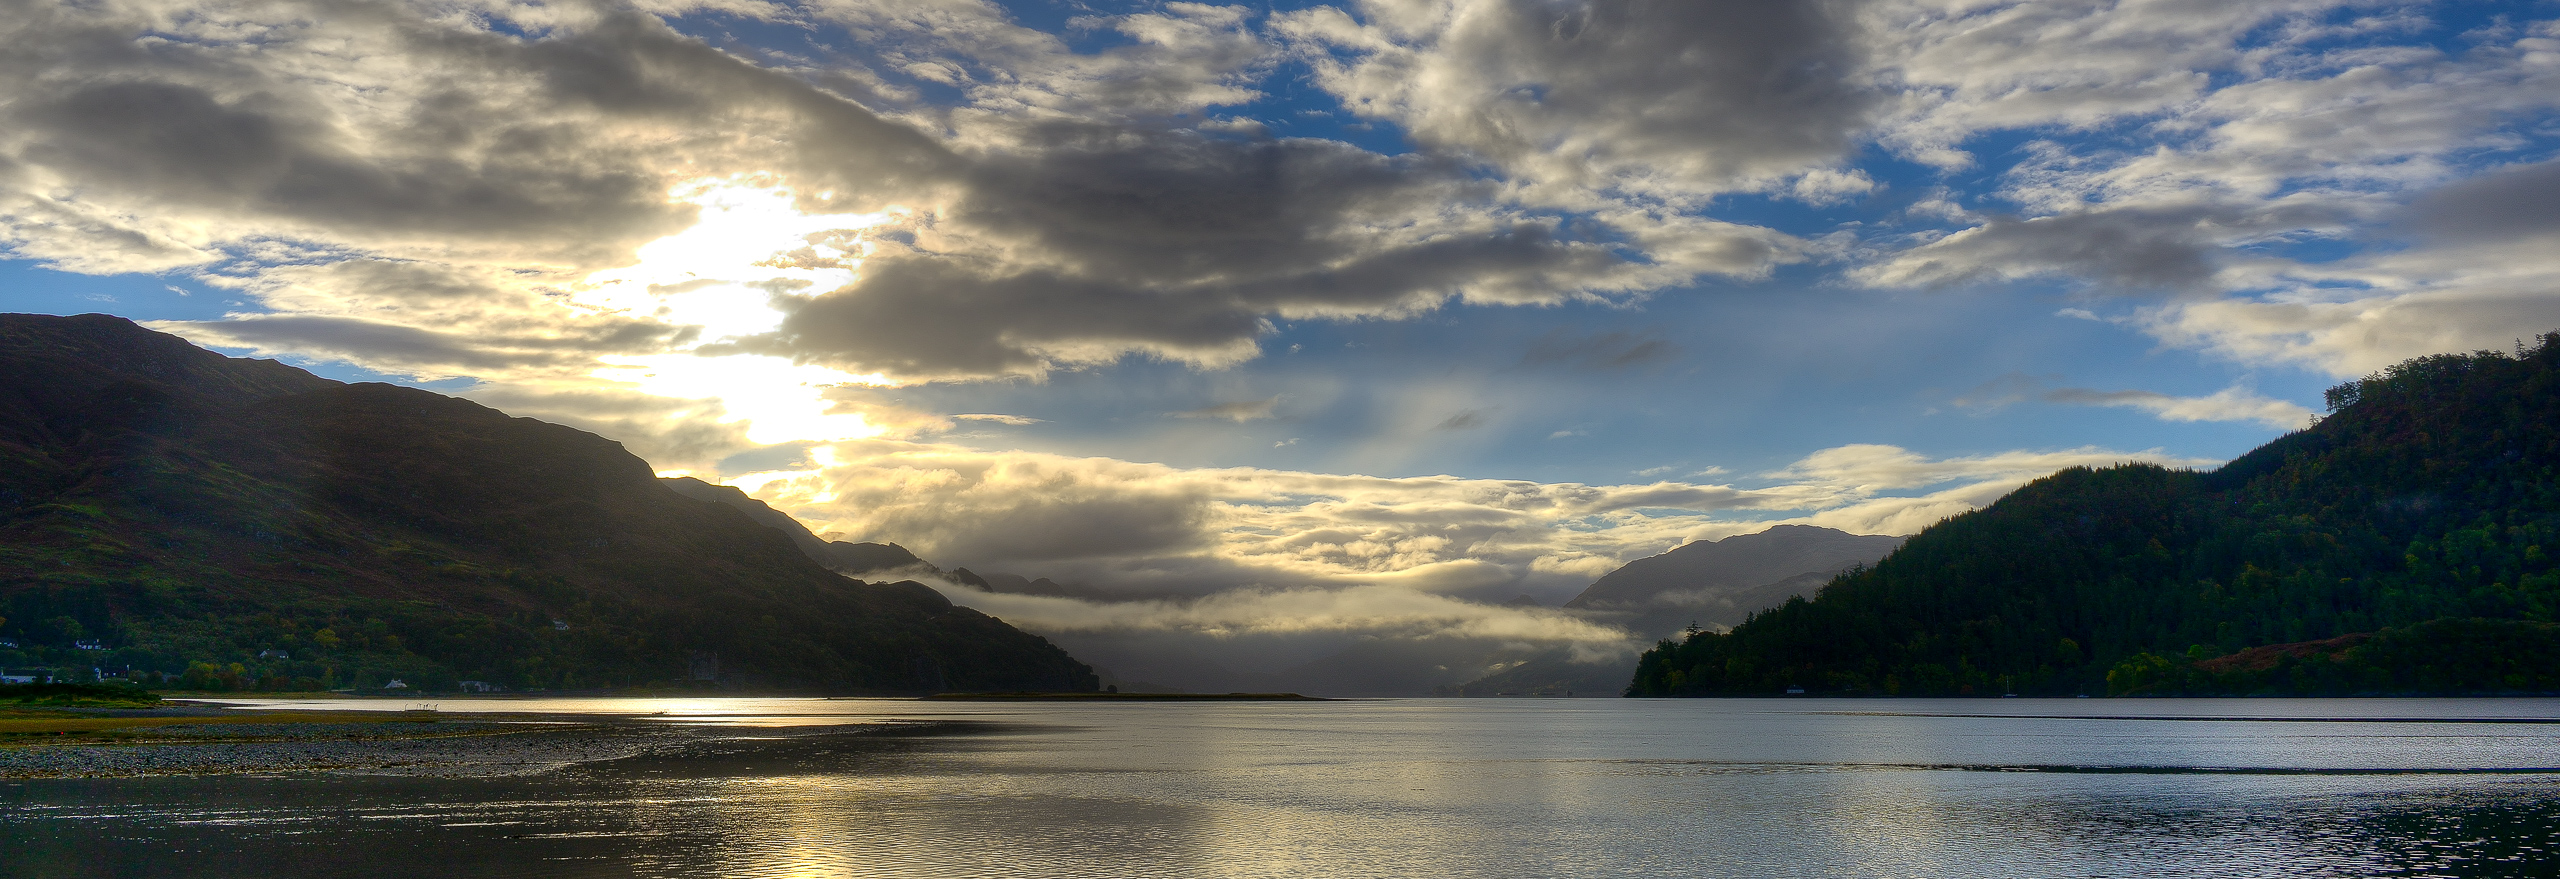 Morning Light Over Loch Duich